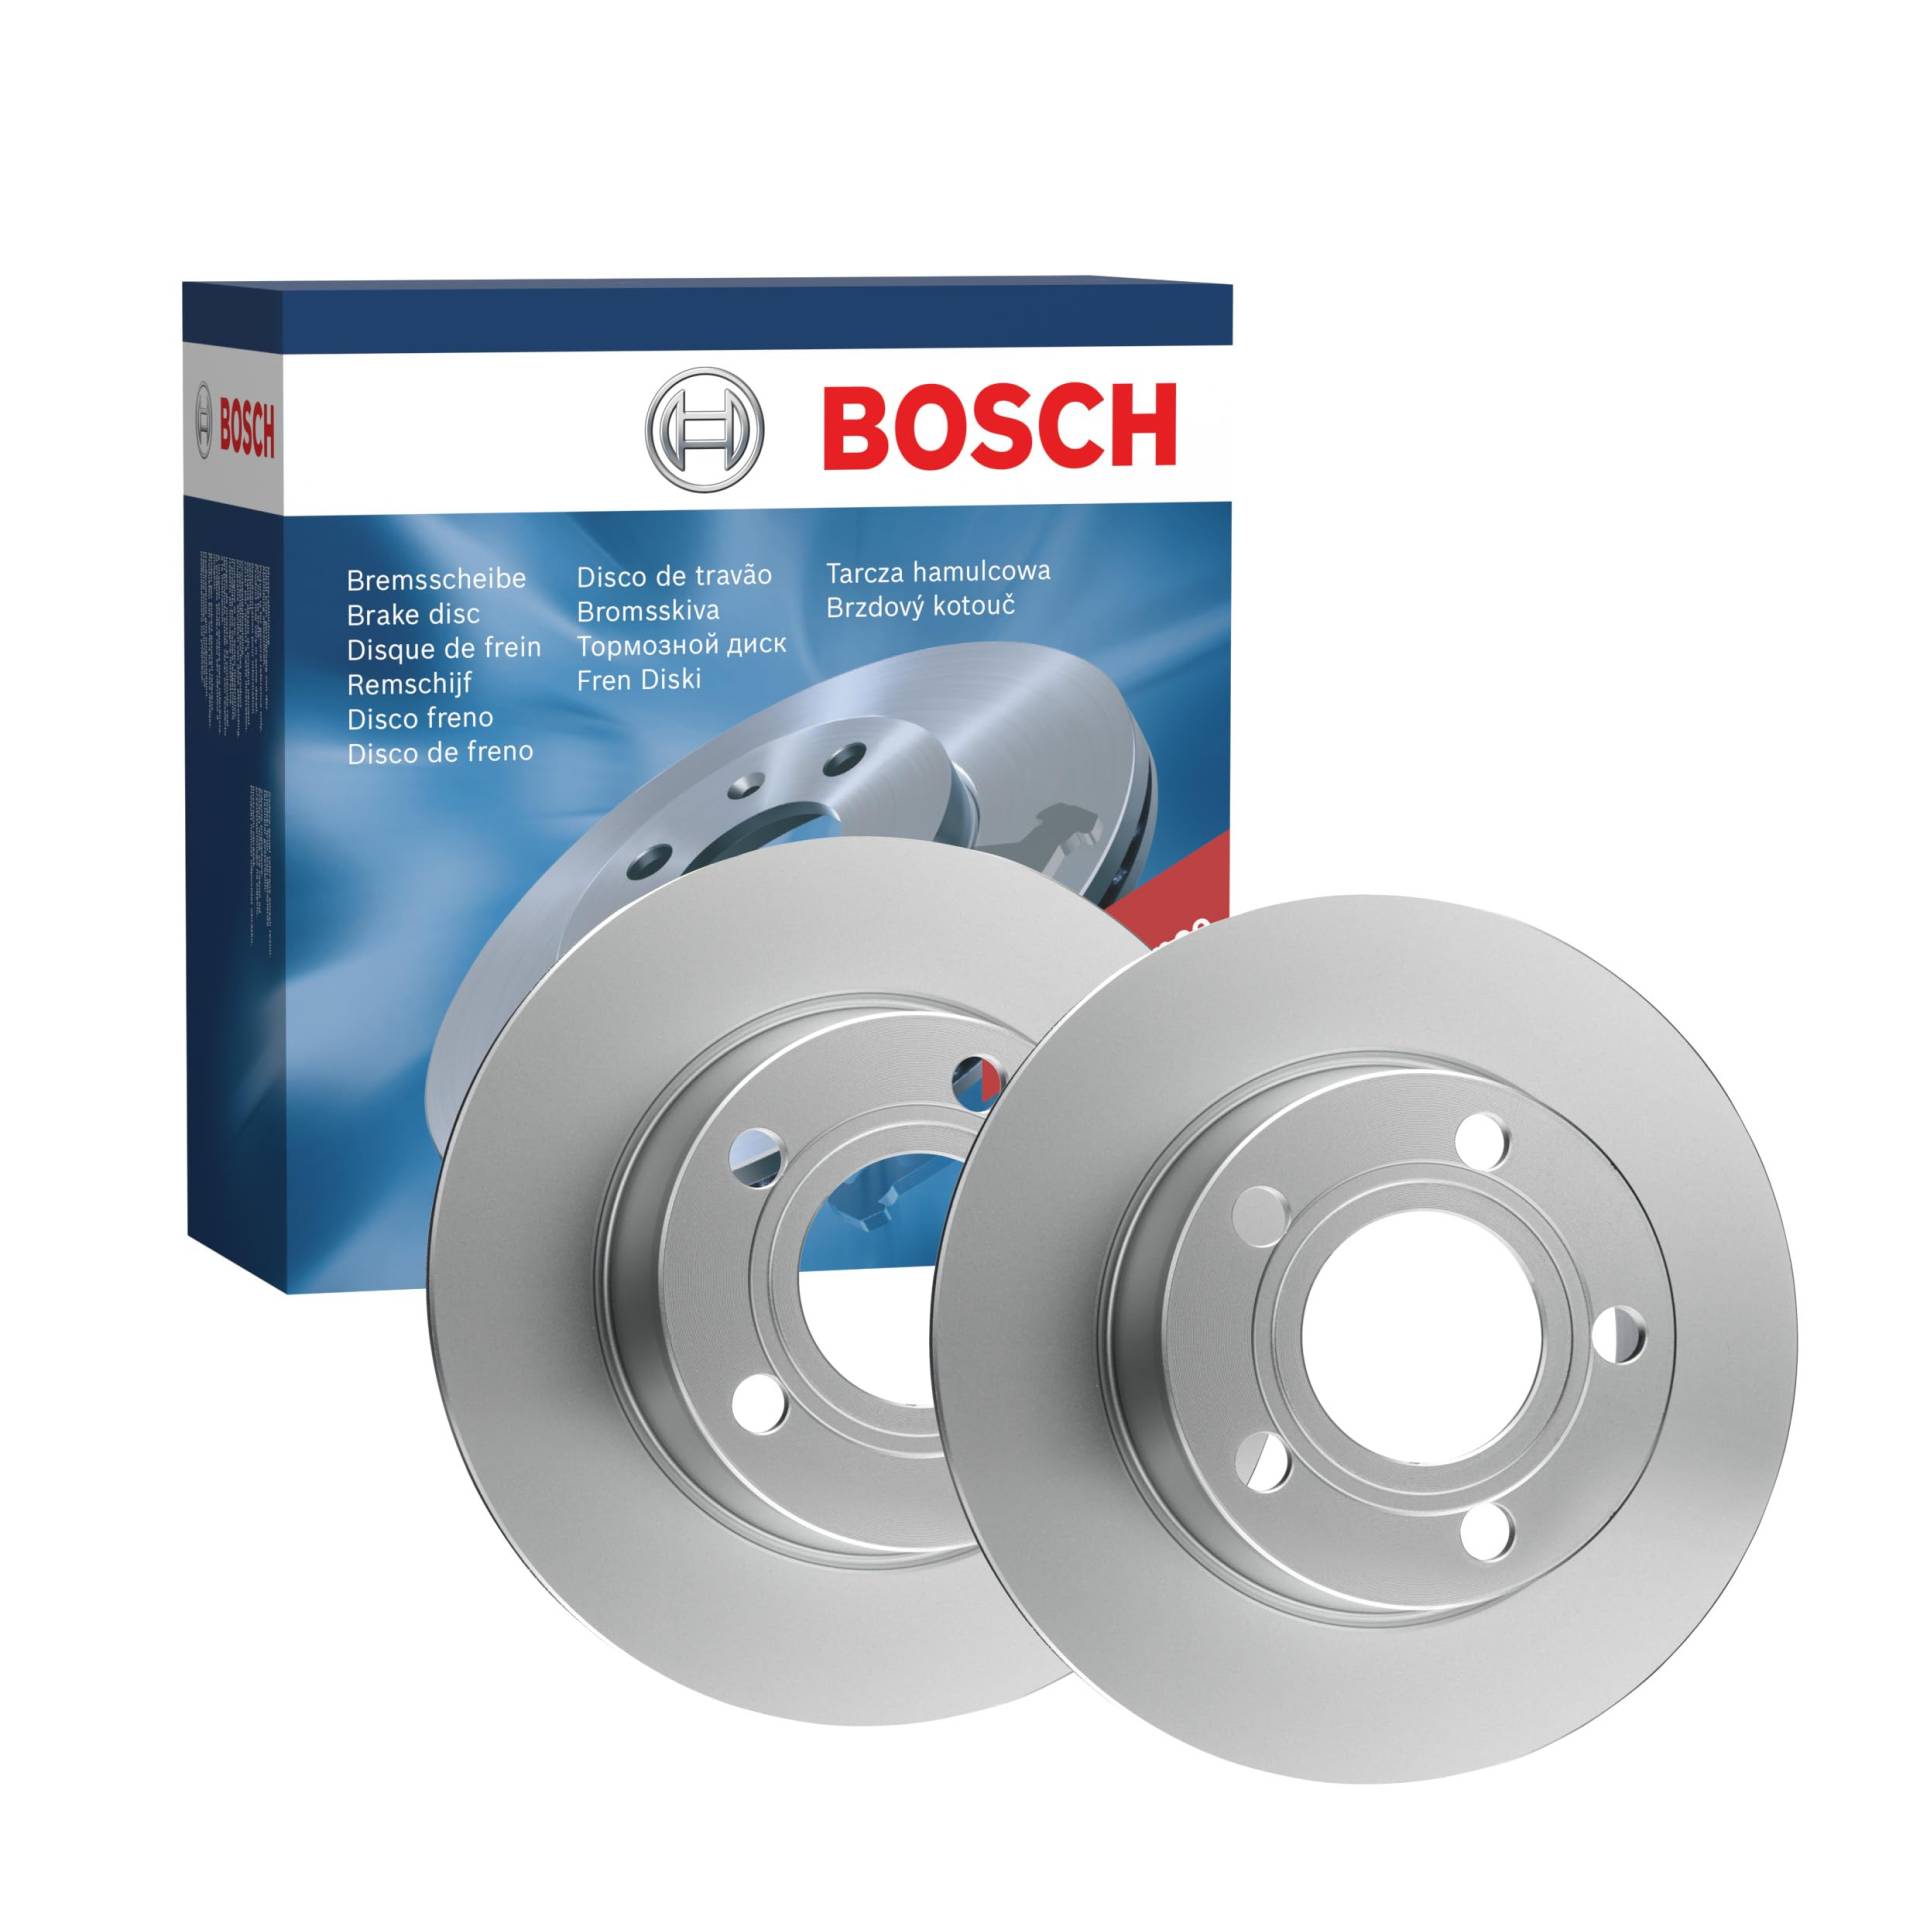 Bosch BD618 Bremsscheiben - Hinterachse - ECE-R90 Zertifizierung - zwei Bremsscheiben pro Set von Bosch Automotive